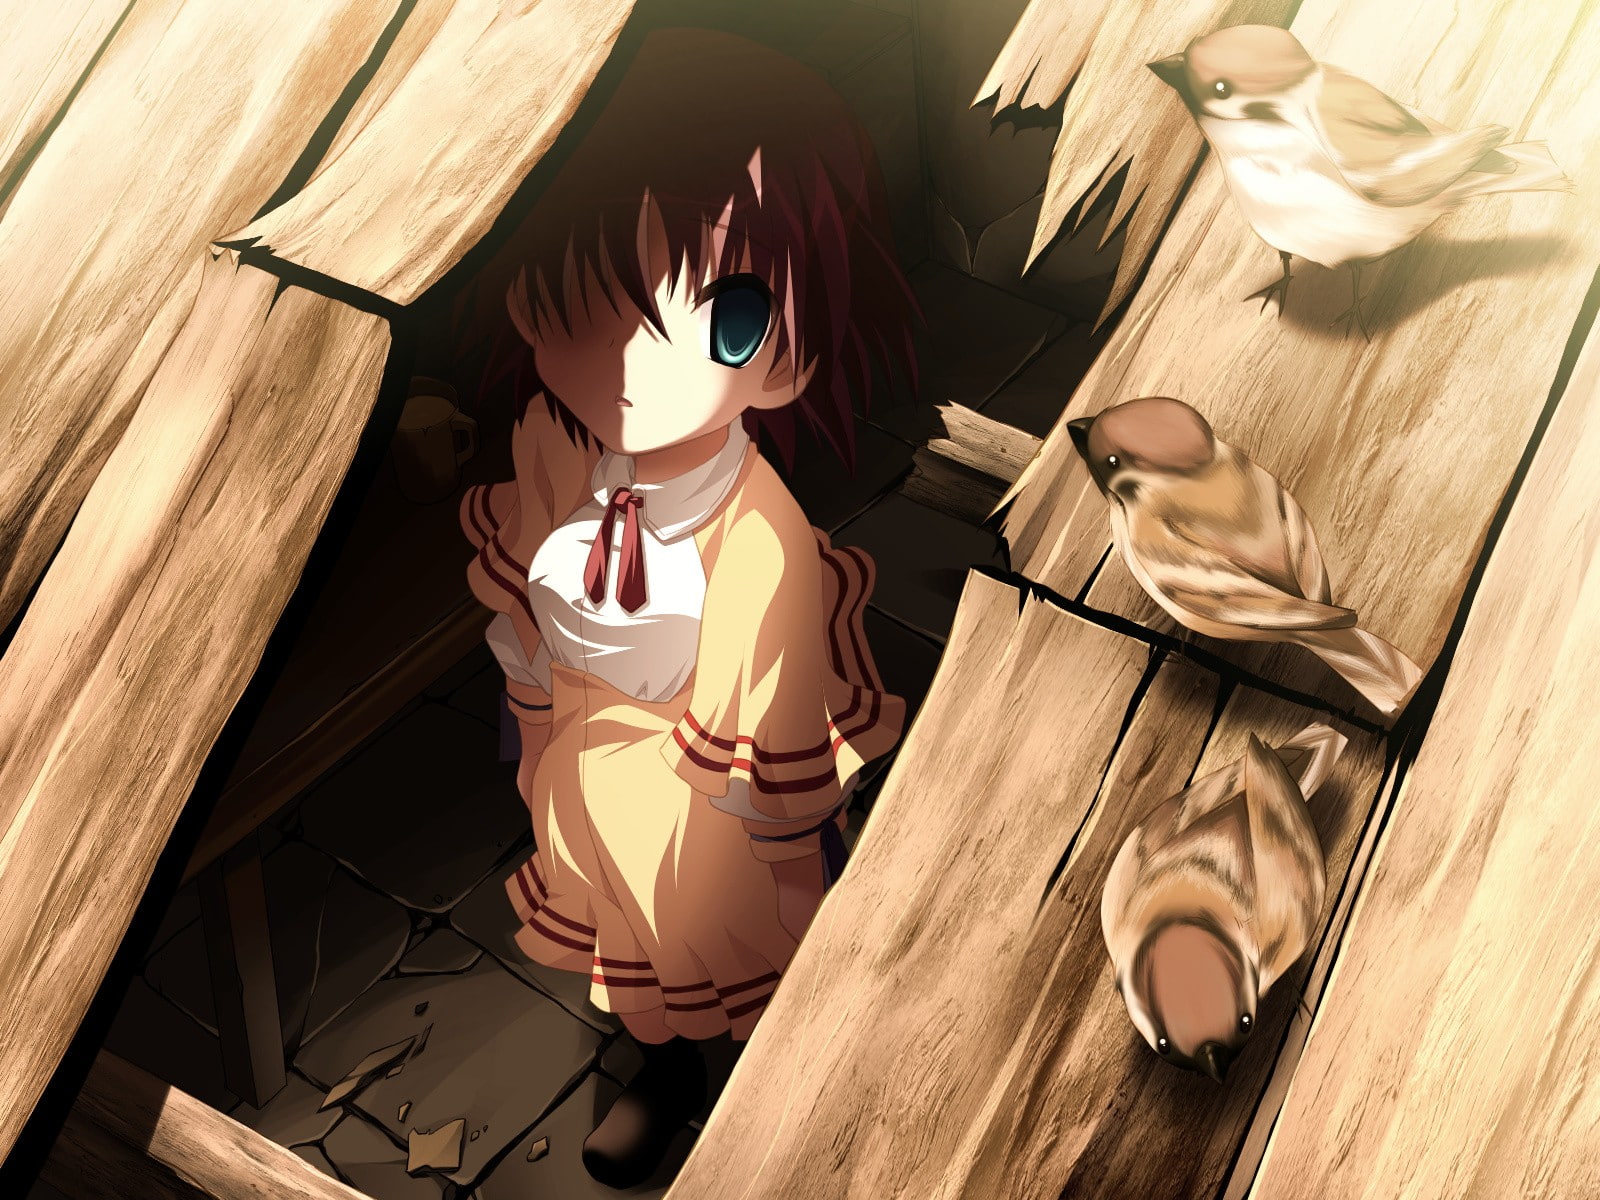 hiding, school uniform, schoolgirl, anime girls, indoors, wood - material